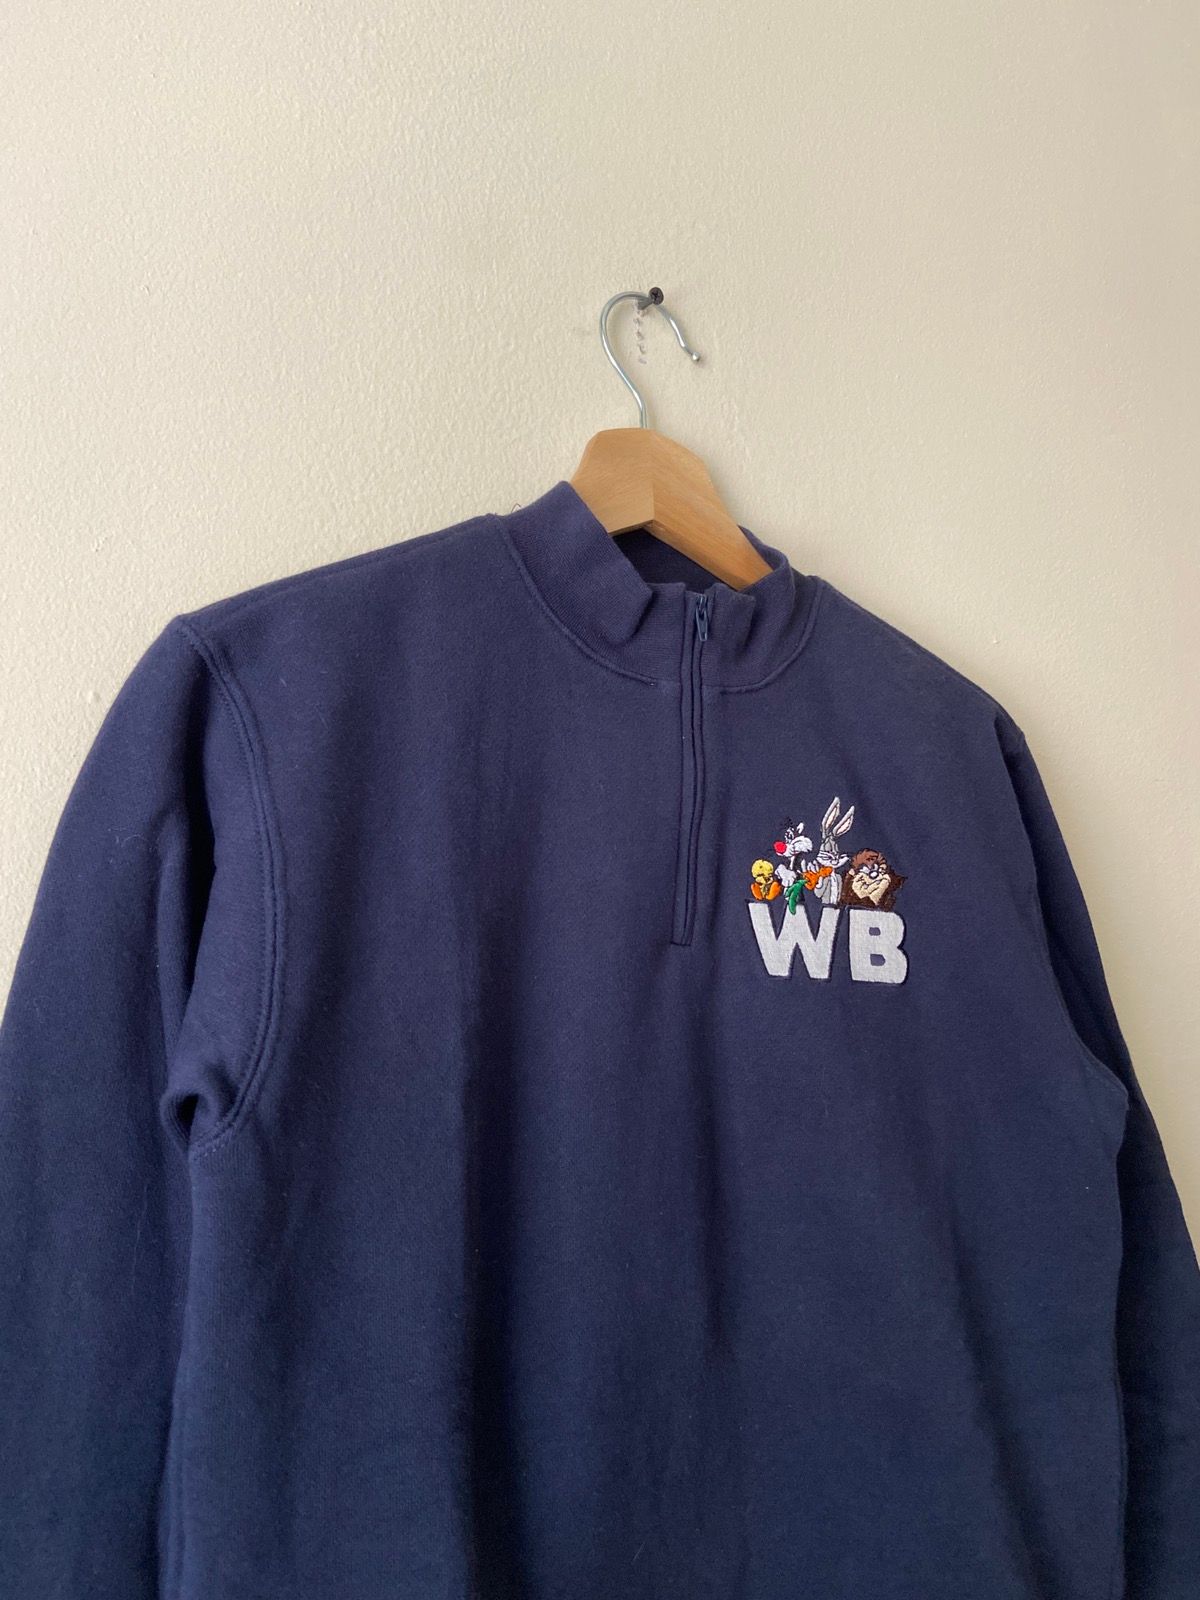 Vintage Vintage 90’s Bugs Bunny Tweety Warner Brothers sweatshirt Size US S / EU 44-46 / 1 - 2 Preview